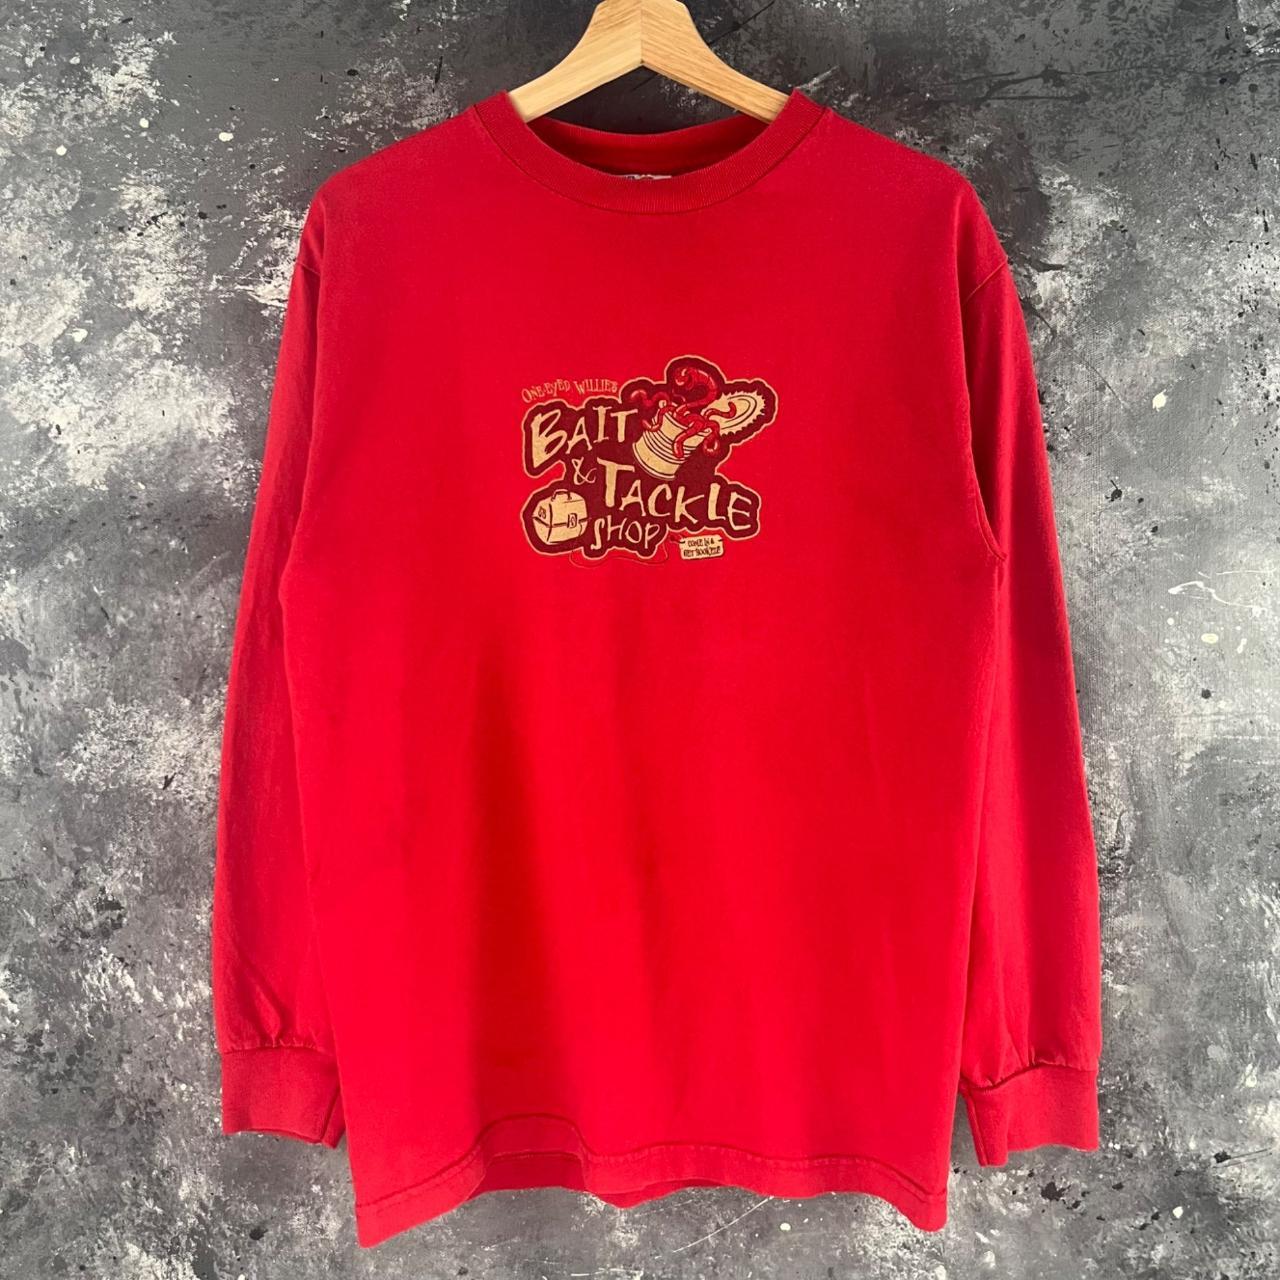 Vintage 90's Fishing shirt Bait & Tackle - Depop